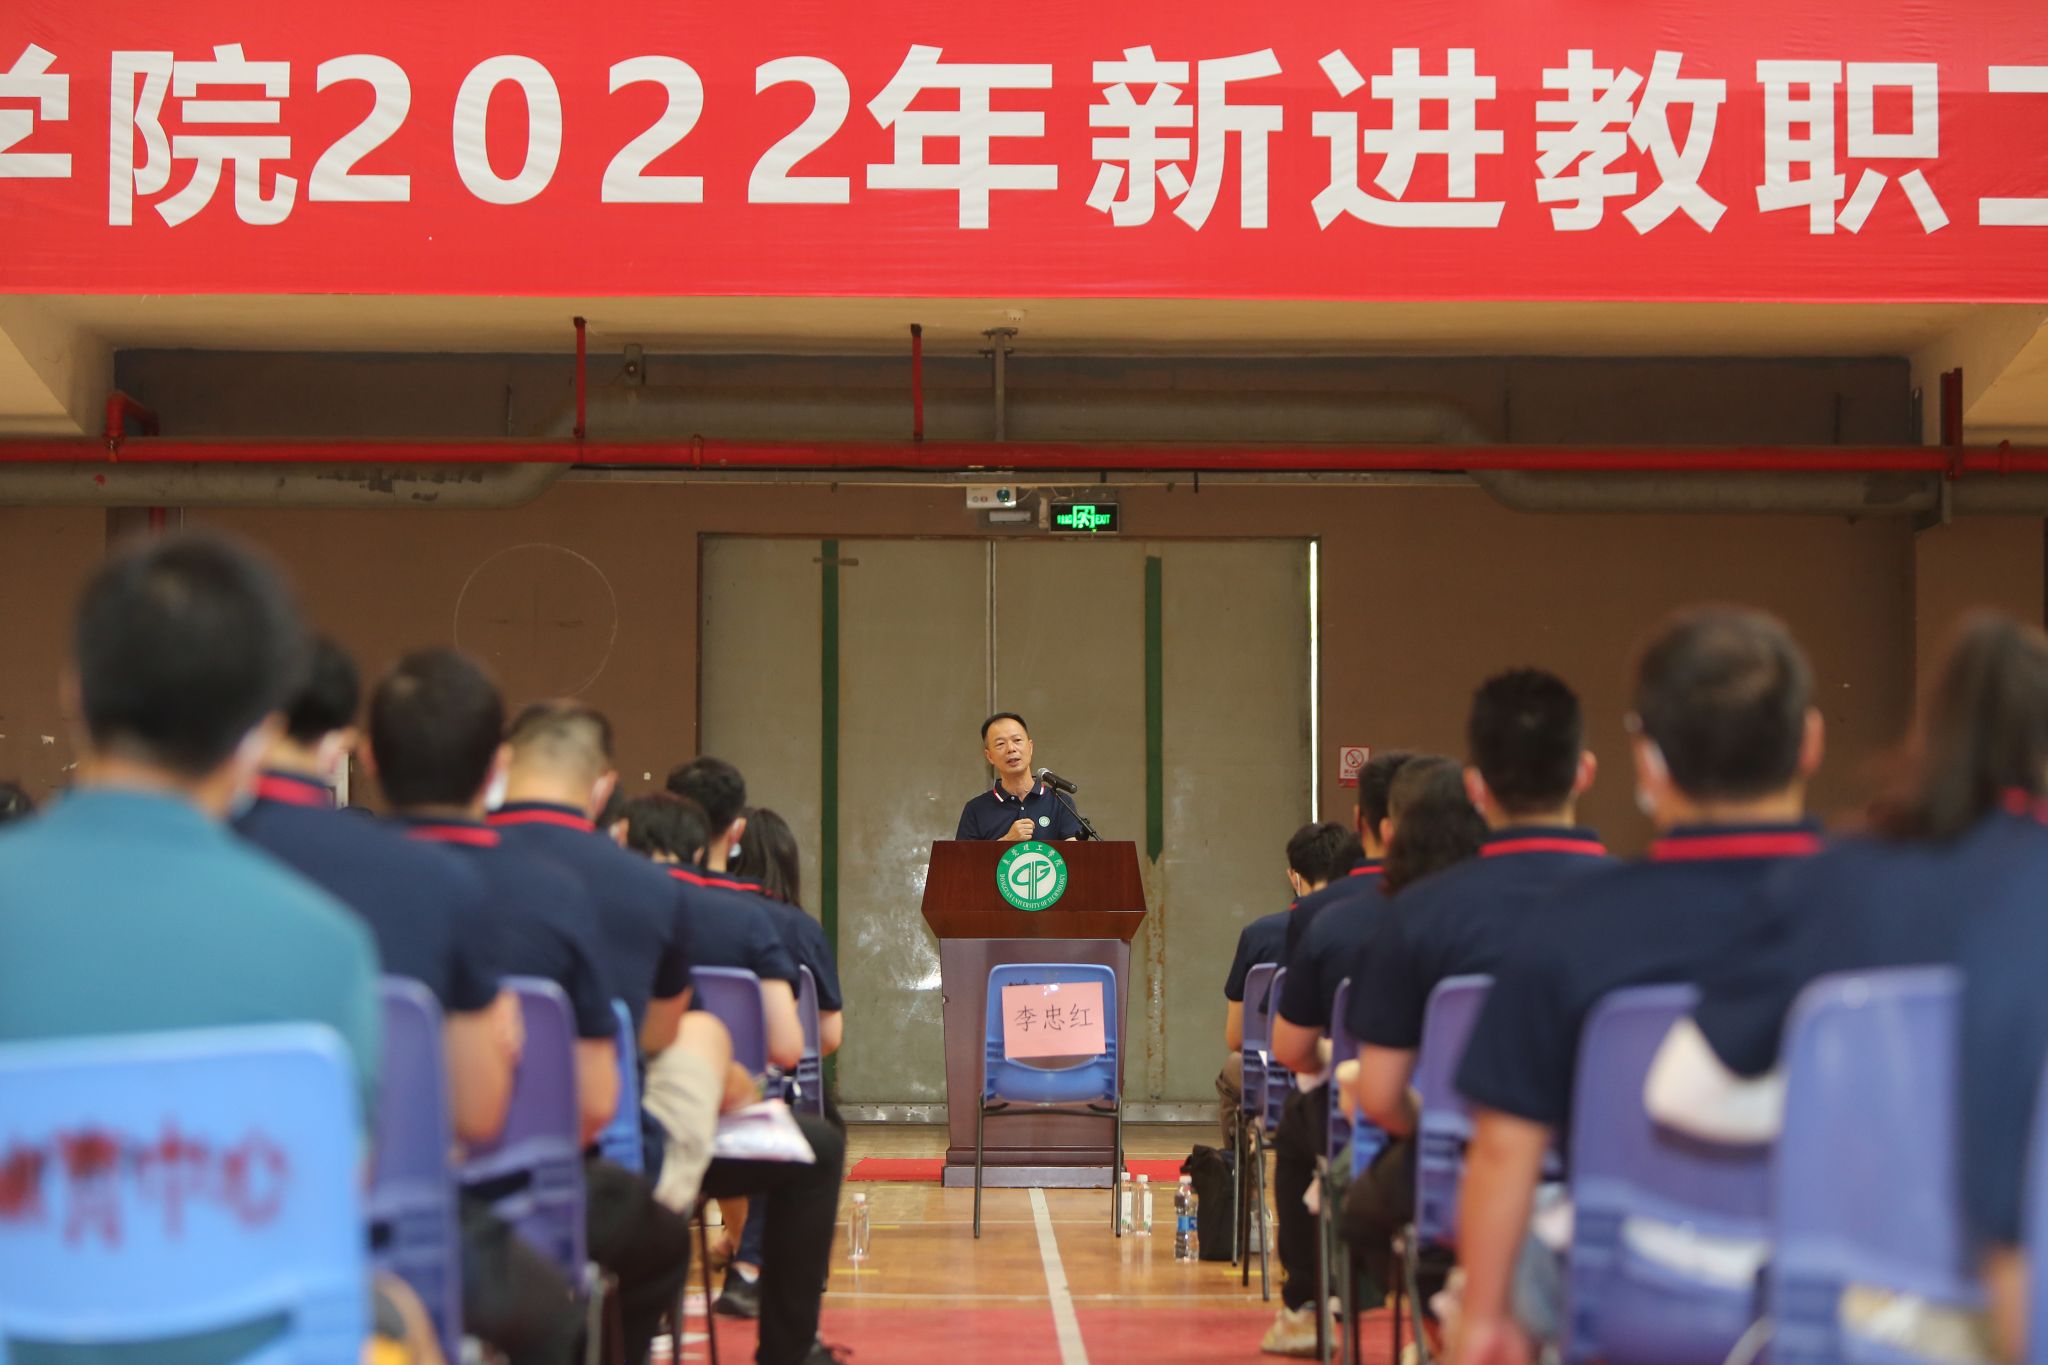 学校举行2022年新进教职工入职培训